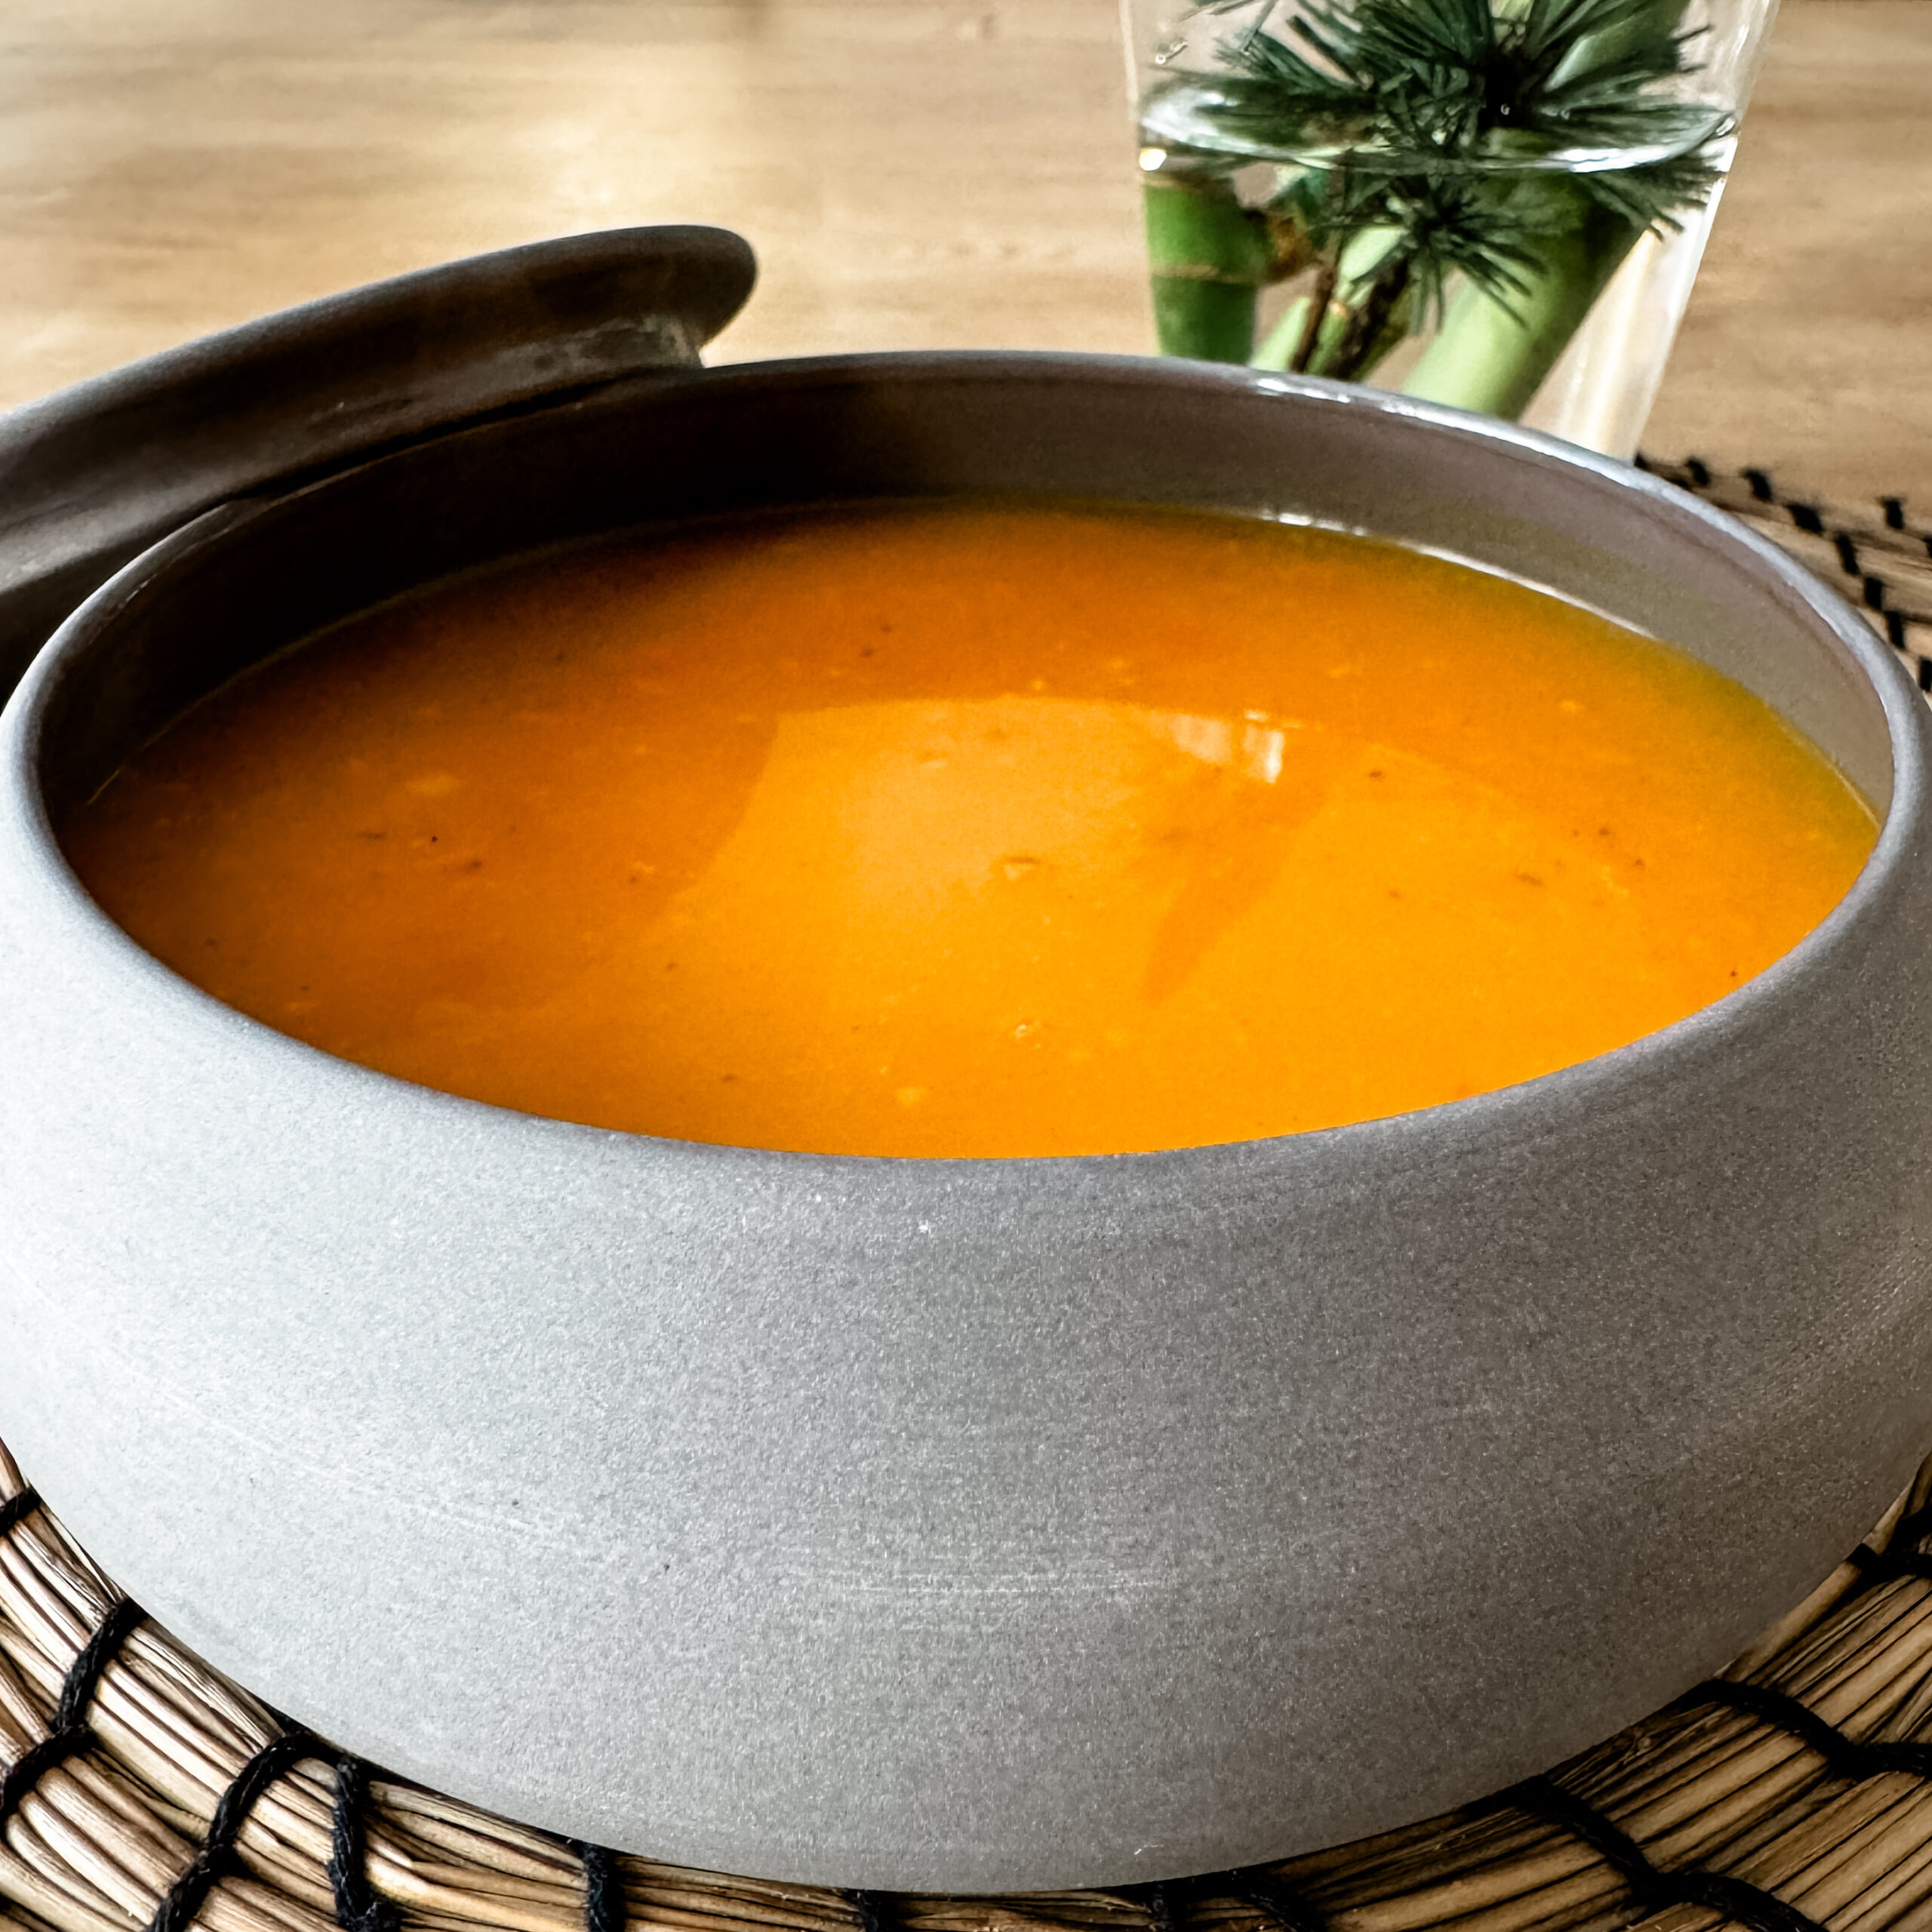 IMG 7970 scaled - La soupe d'hiver, aux épices qui réchauffent le corps et l'esprit.